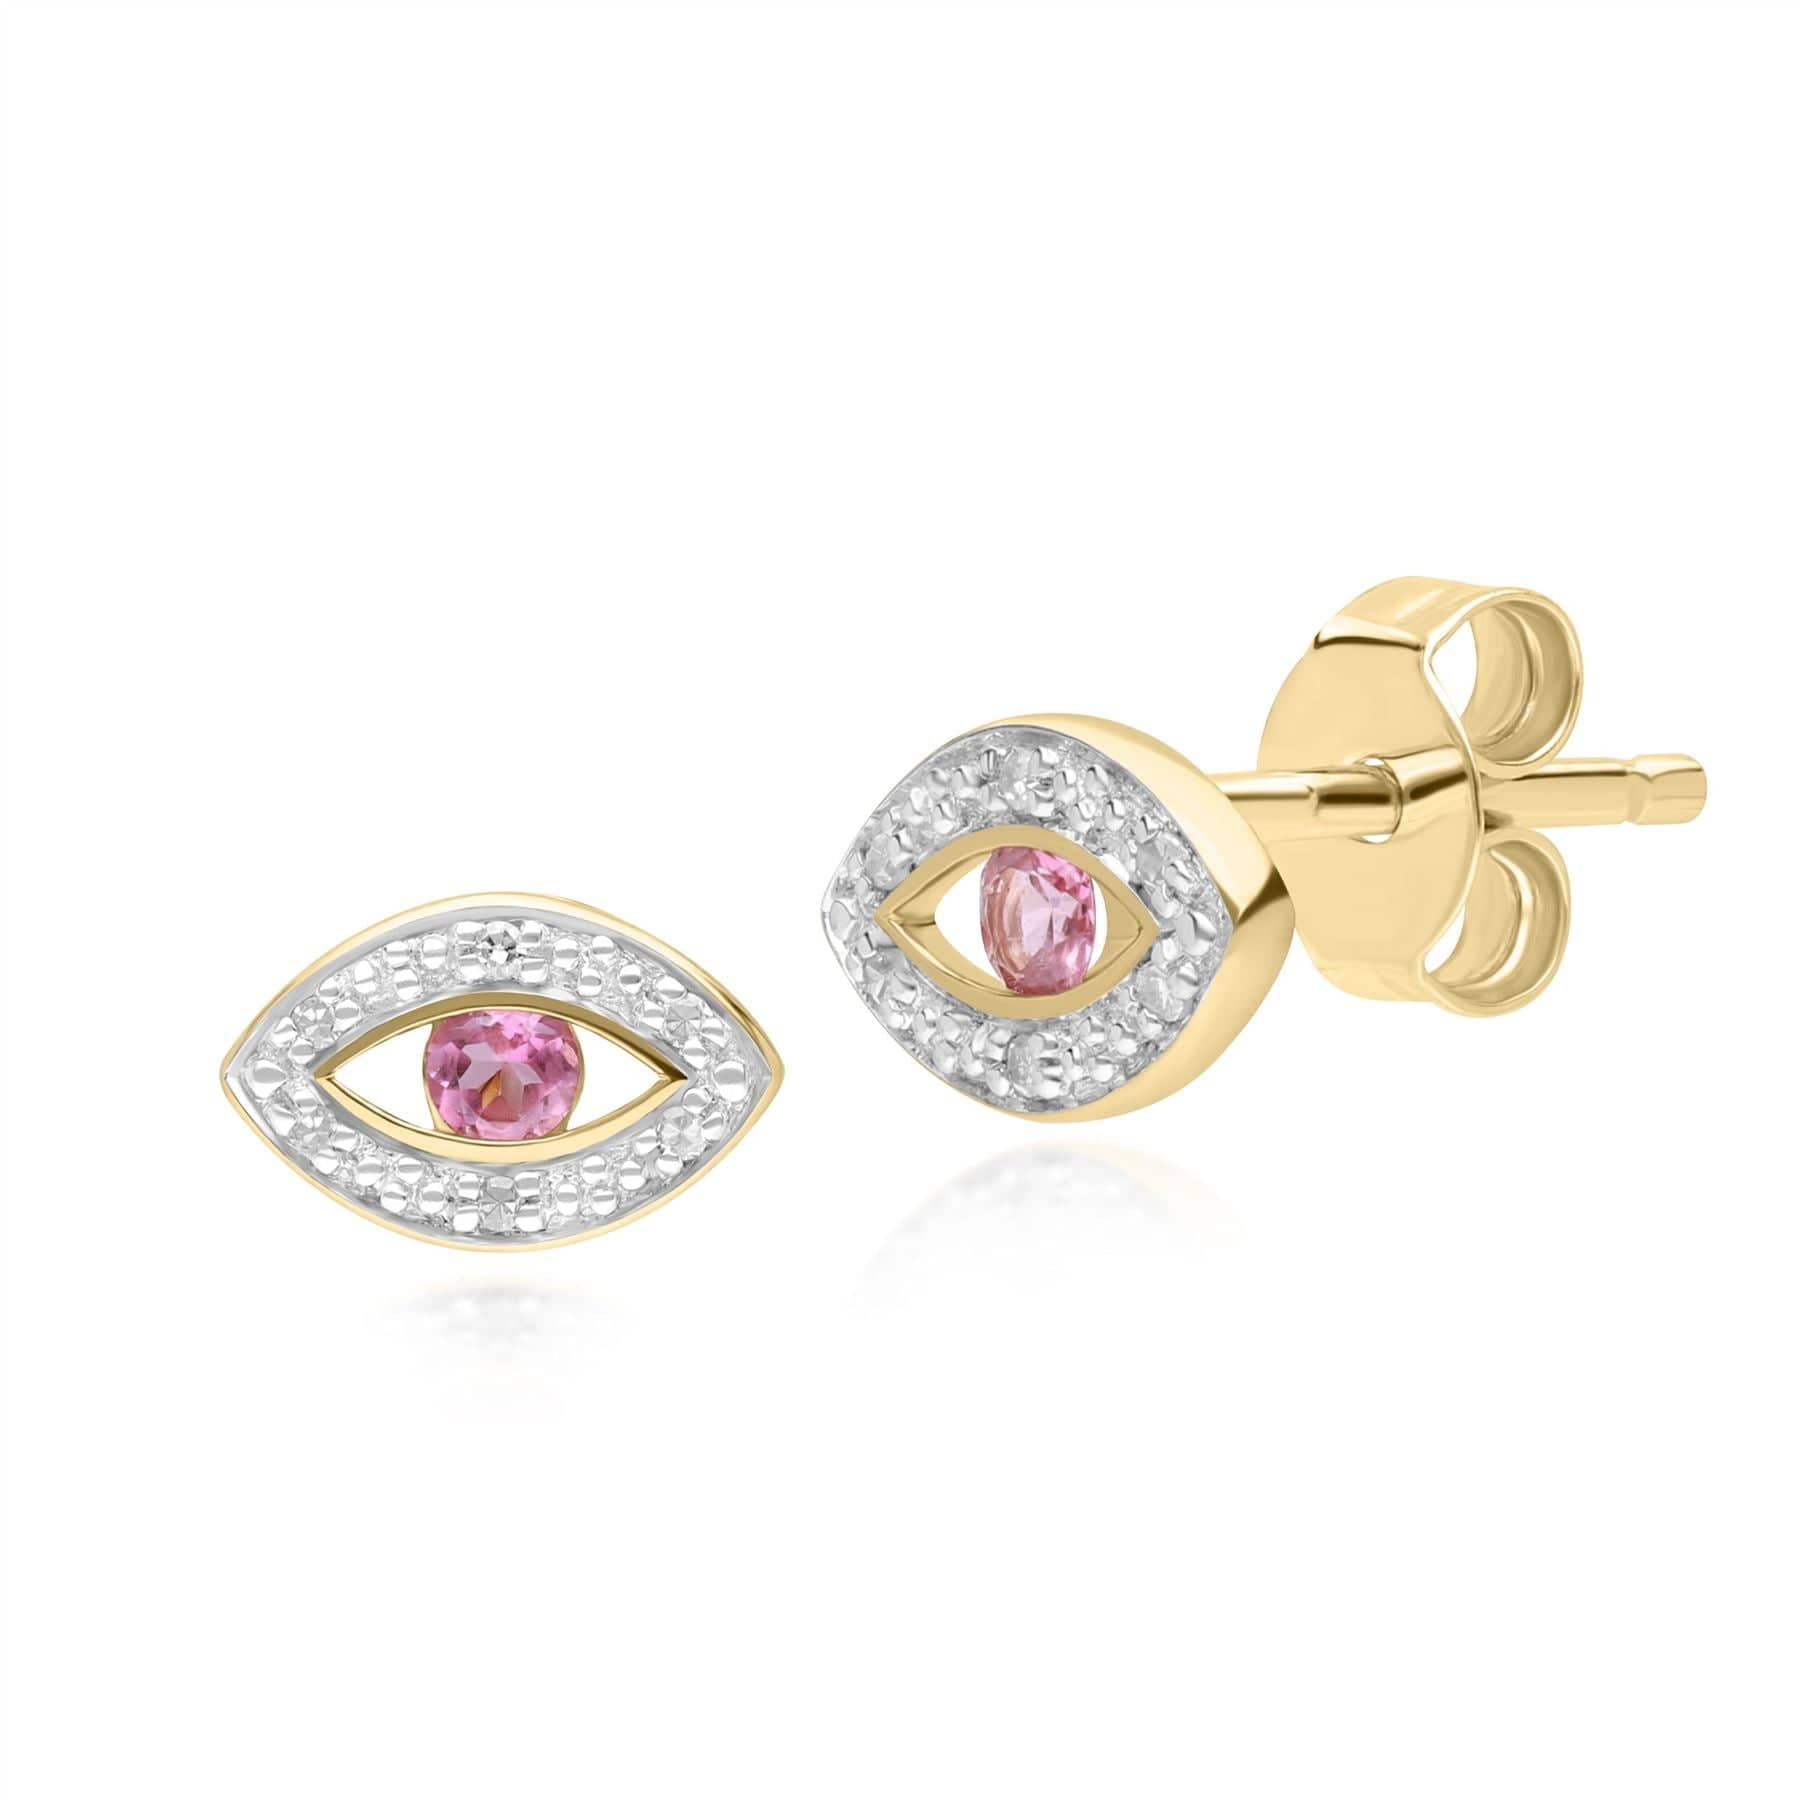 5.94 Carat Sugarloaf Rubellite Tourmaline, Peridot, and Diamond Earrings  18k WG - Kiersten Elizabeth Fine Jewelry